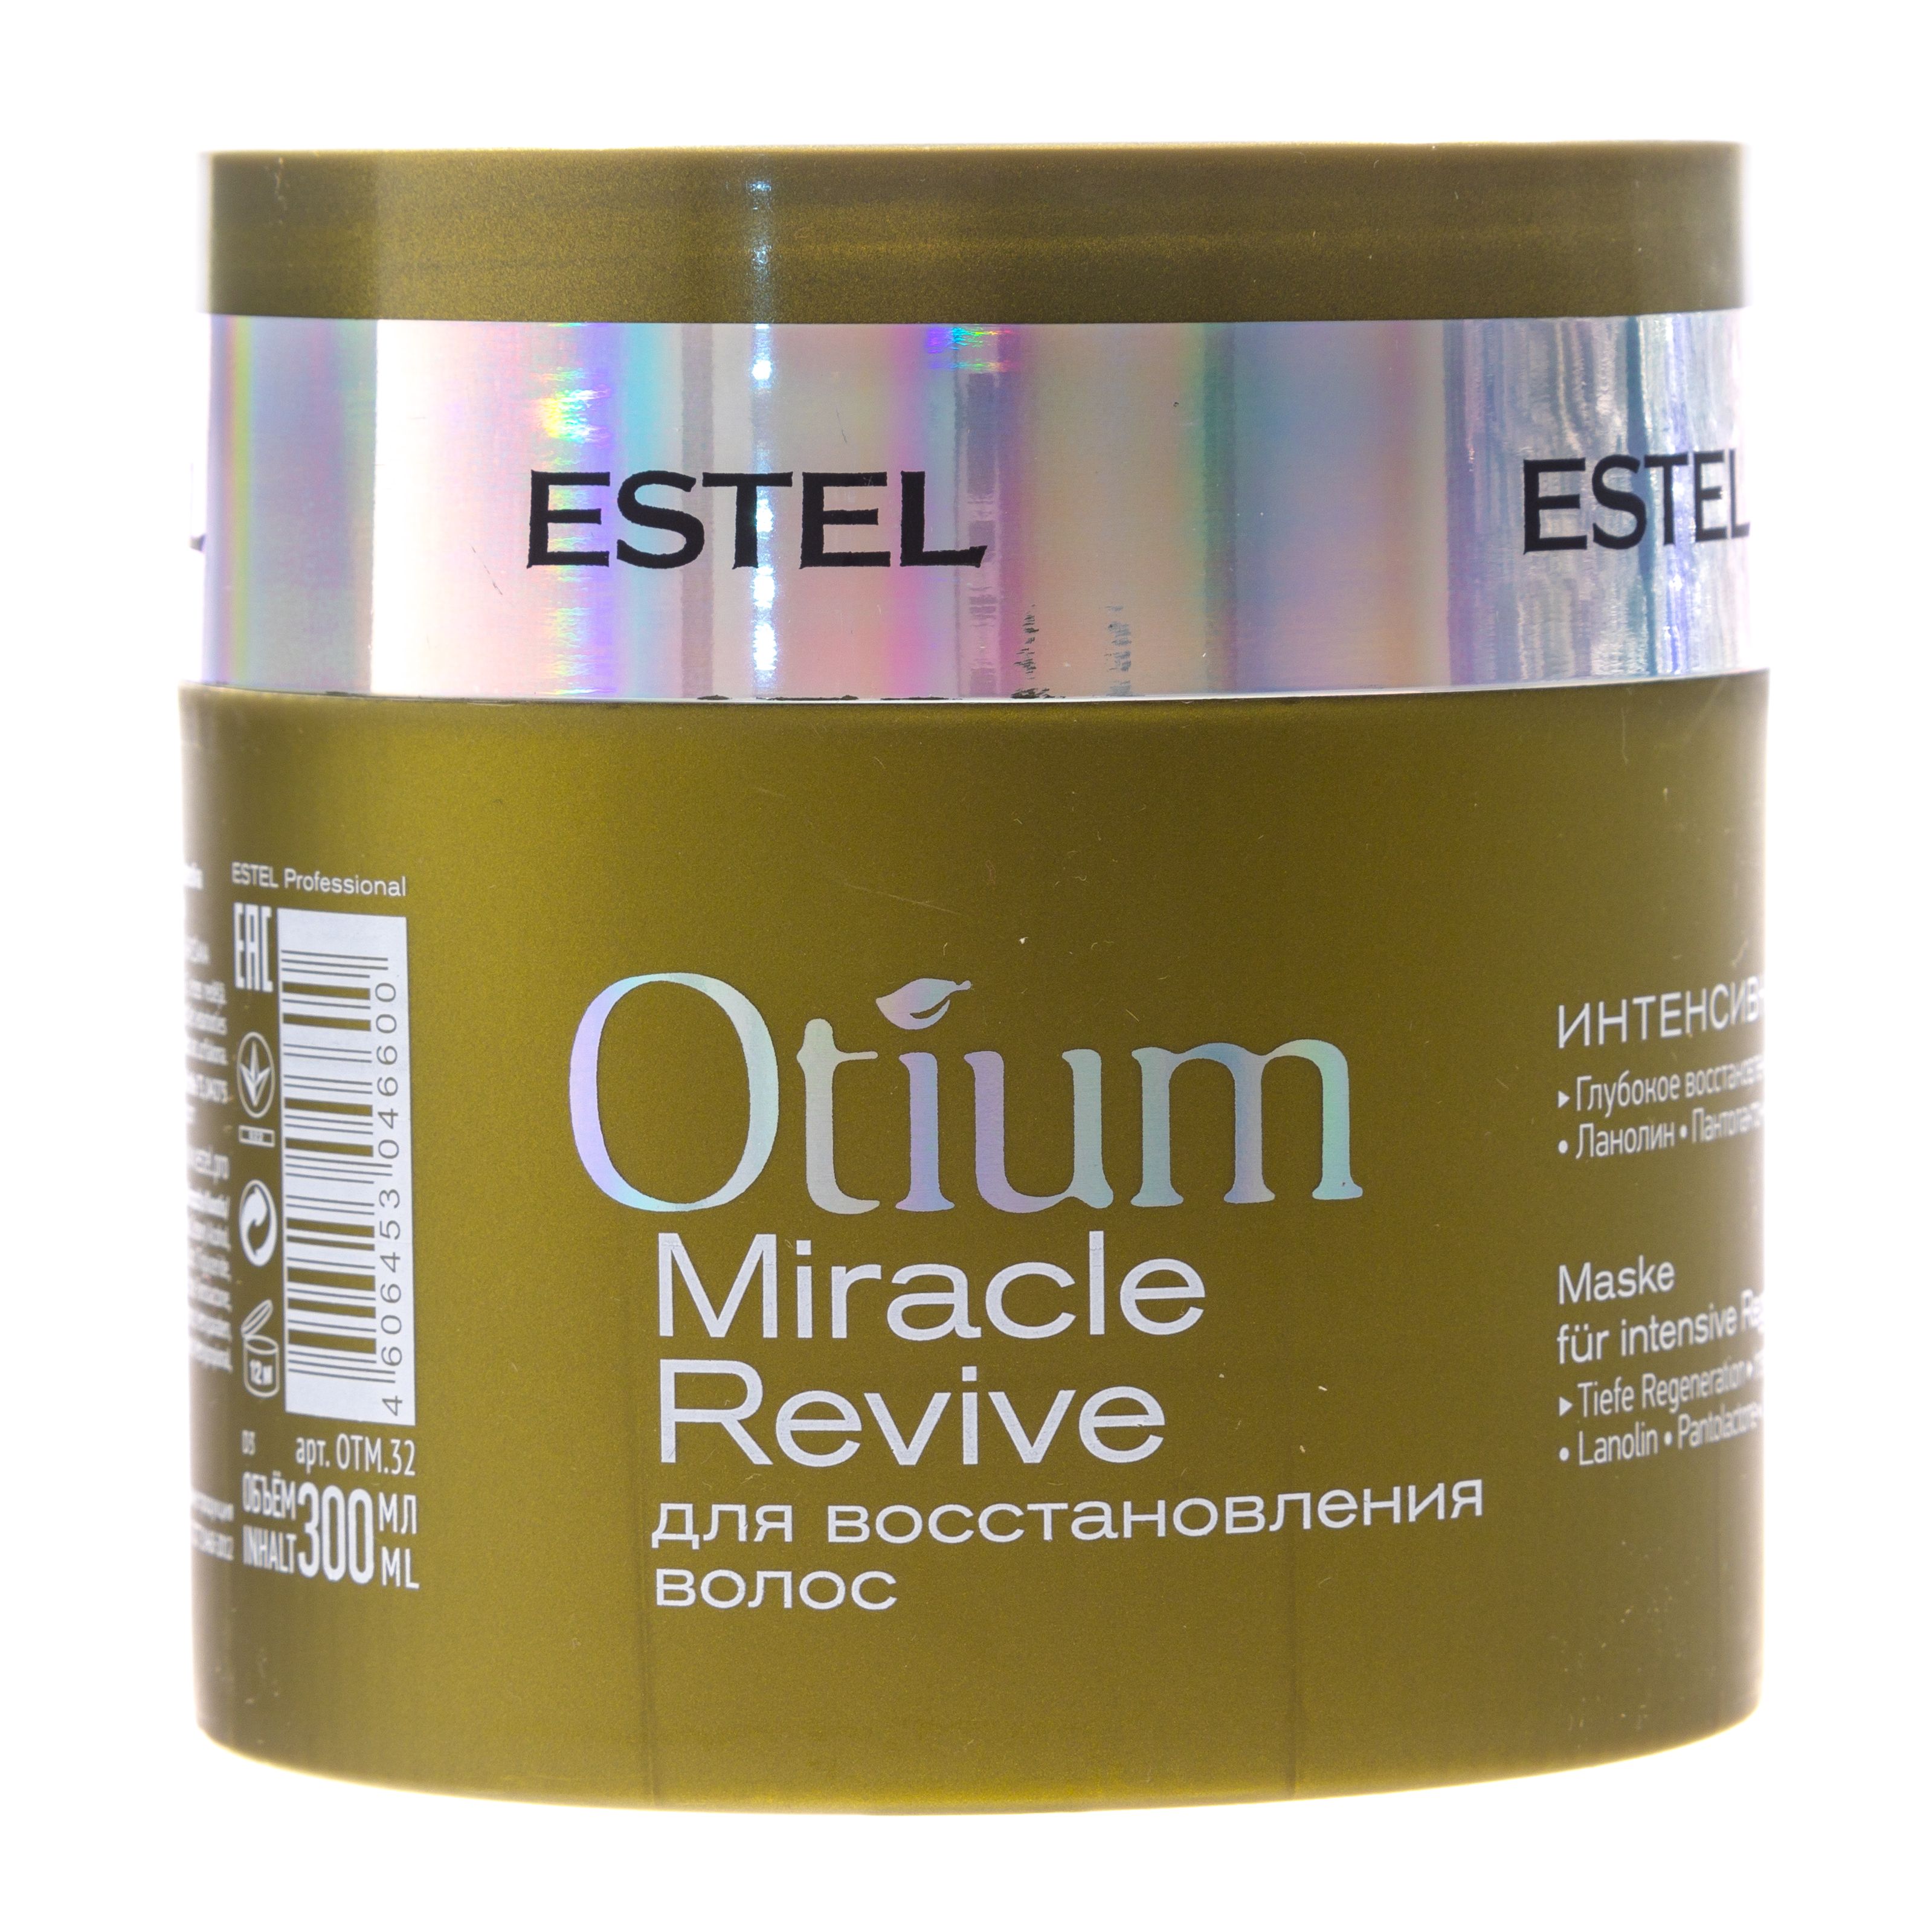 Маска для волос Estel Professional Otium Miracle Revive 300 мл estel подарочный набор полезное питание для волос крем шампунь 250 мл спрей 200 мл маска йогурт 300 мл